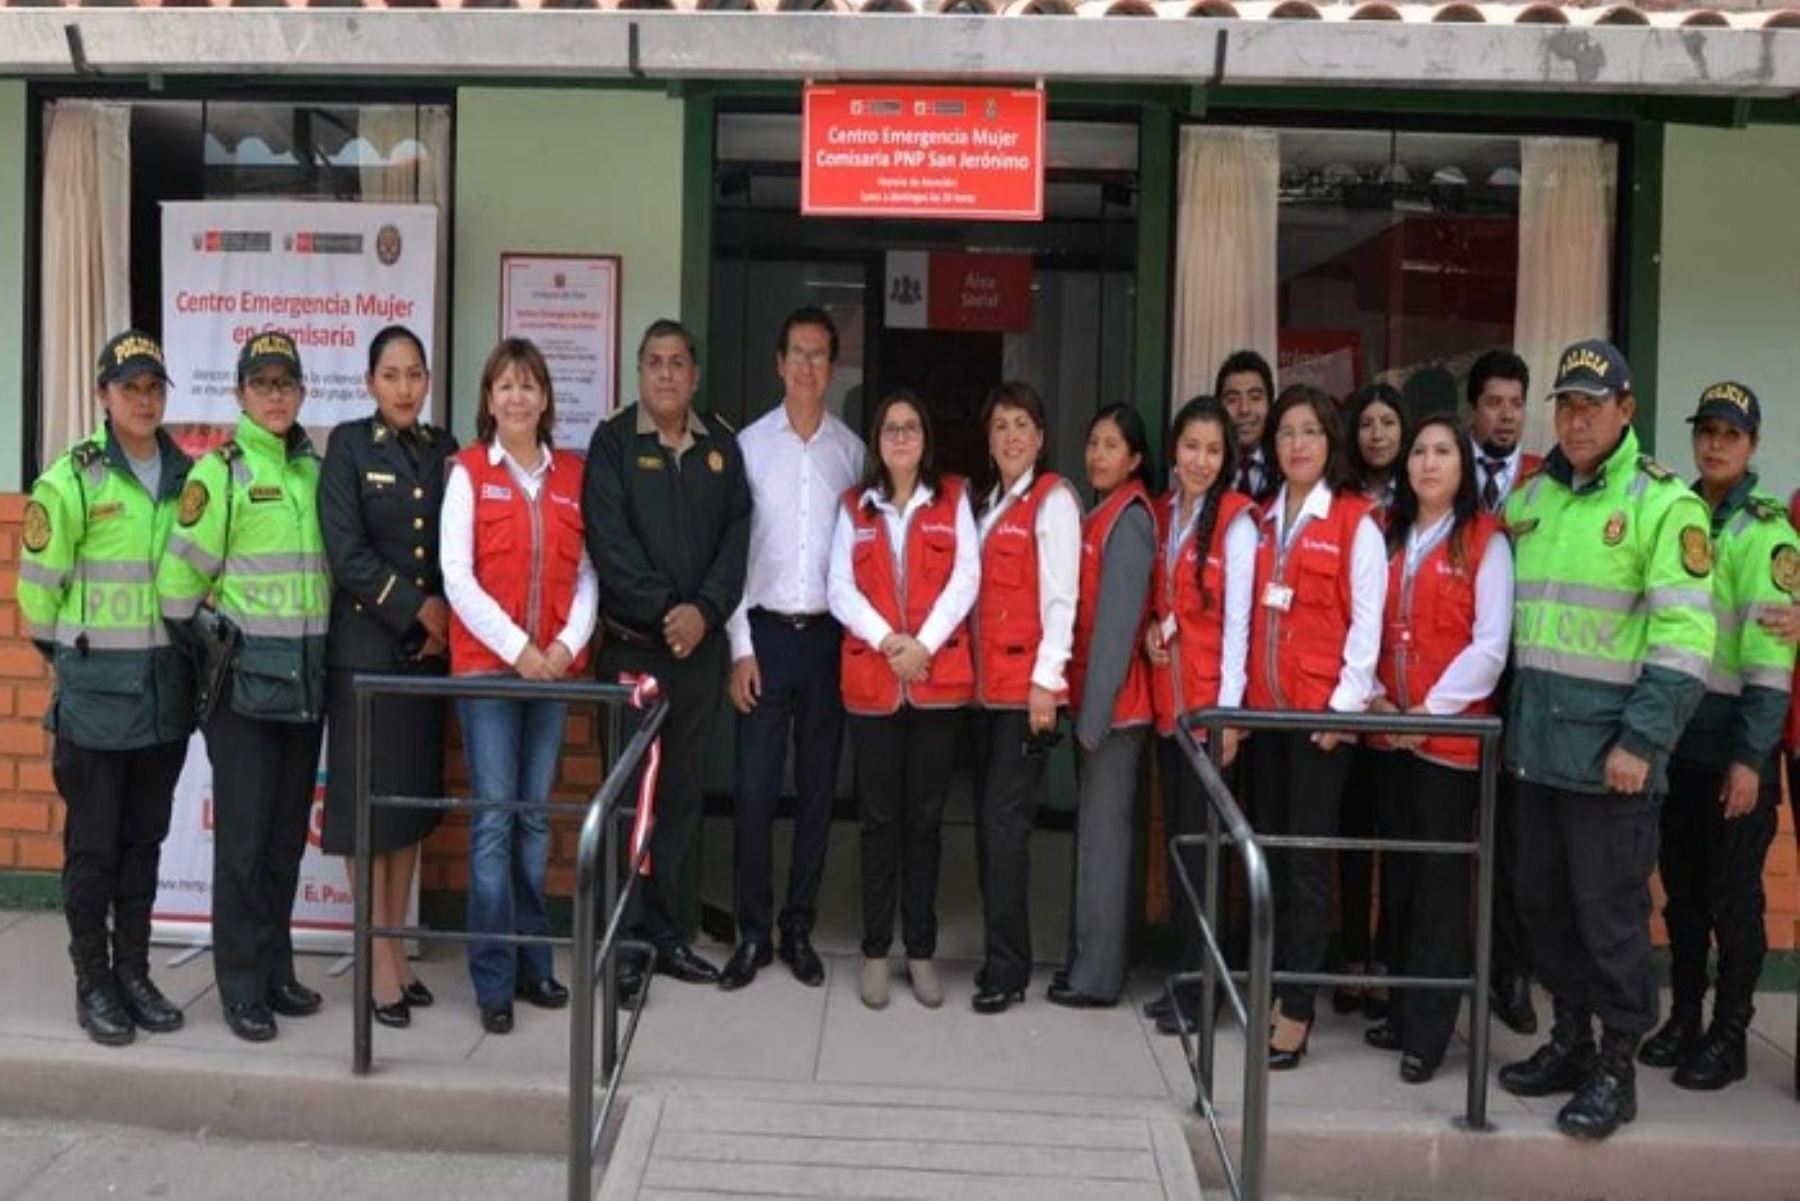 El Centro Emergencia Mujer (CEM) N°23 de la región Cusco, ubicado en la comisaría de San Jerónimo, fue inaugurado esta mañana por la ministra de la Mujer y Poblaciones Vulnerables, Ana María Mendieta.